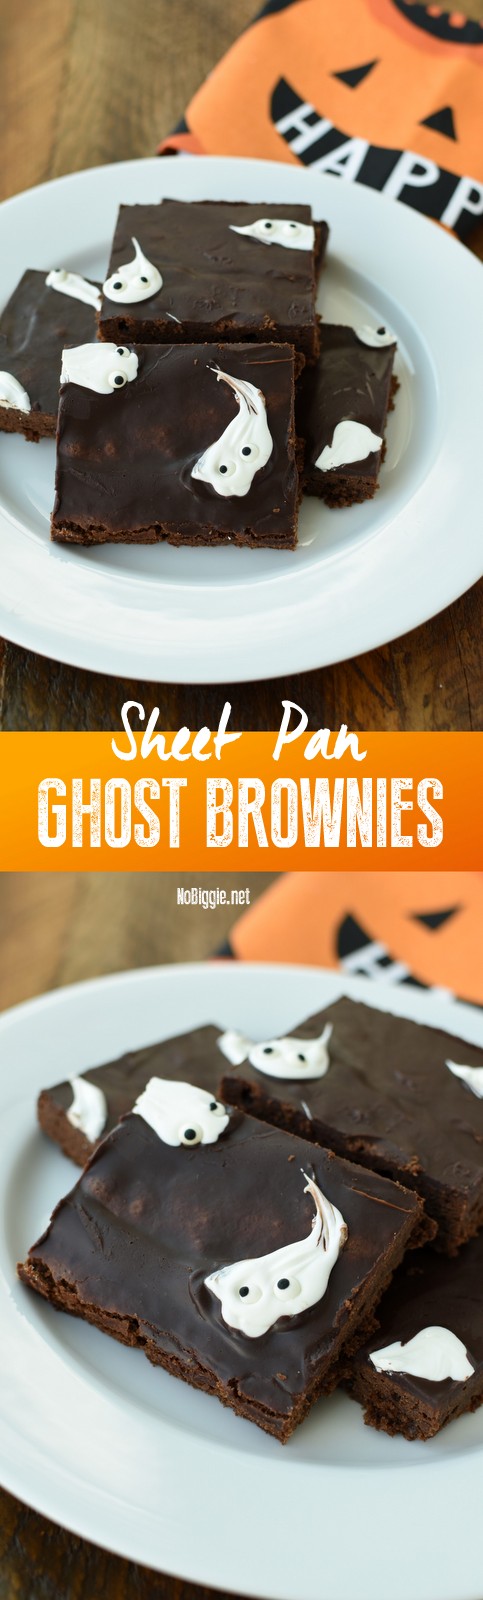 sheet pan ghost brownies | NoBiggie.net